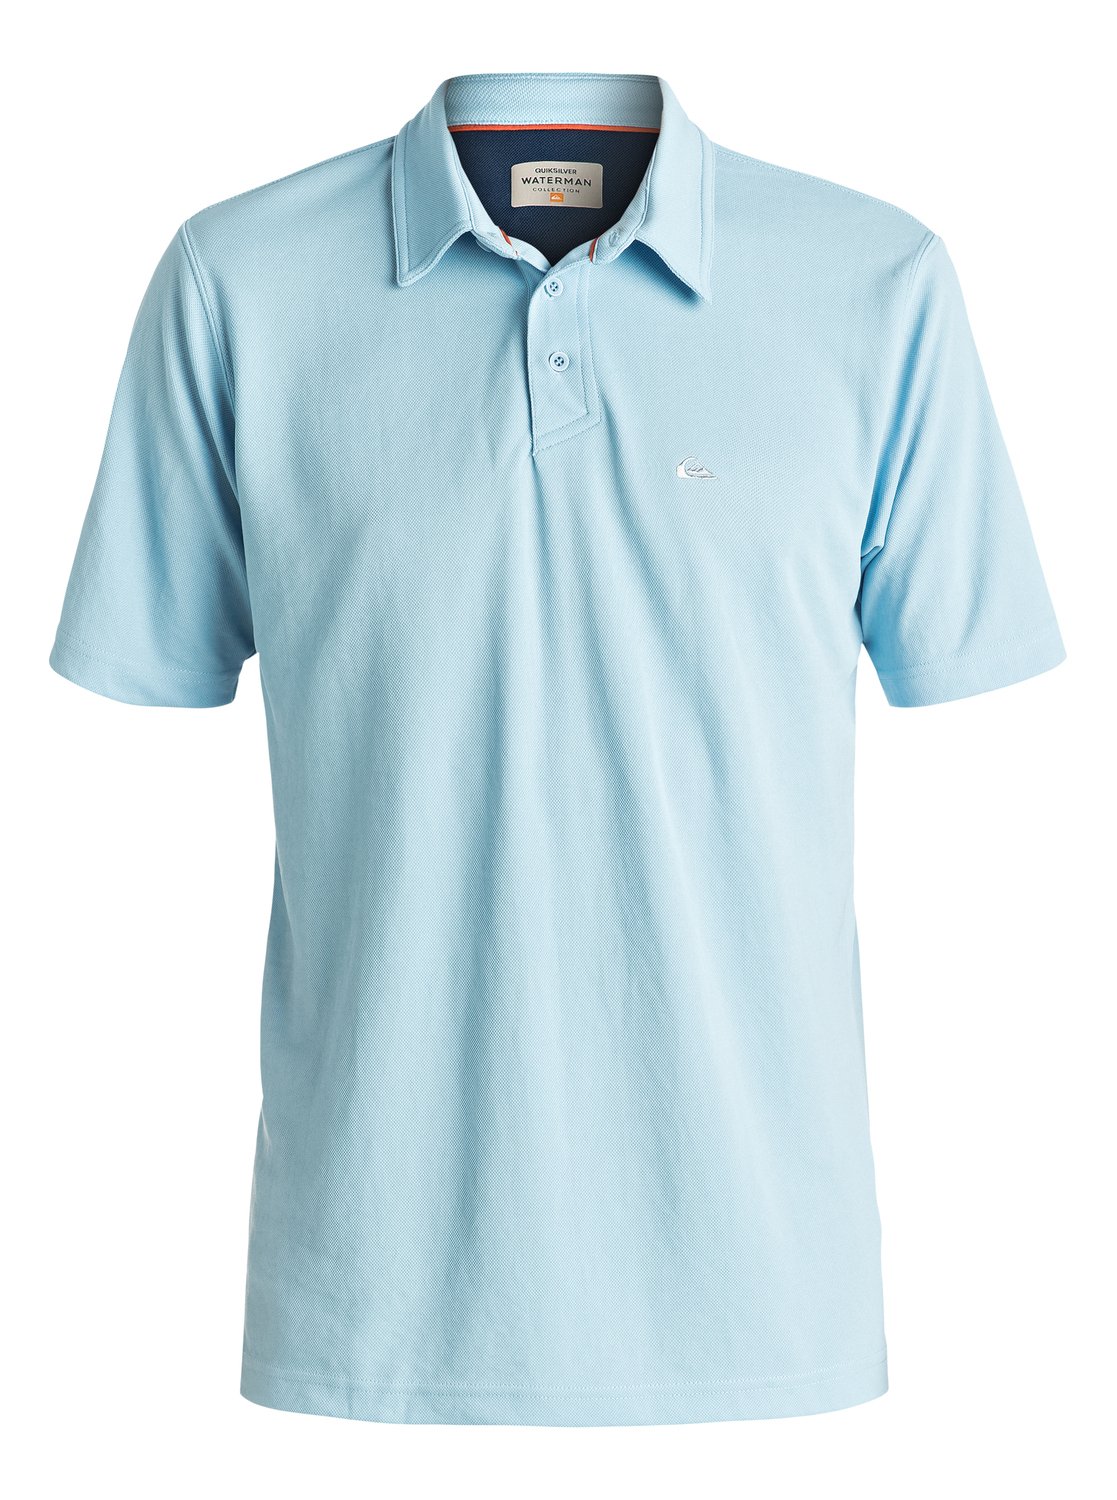 Quiksilver™ Men's Water 2 Polo Shirt EQMKT03006 | eBay